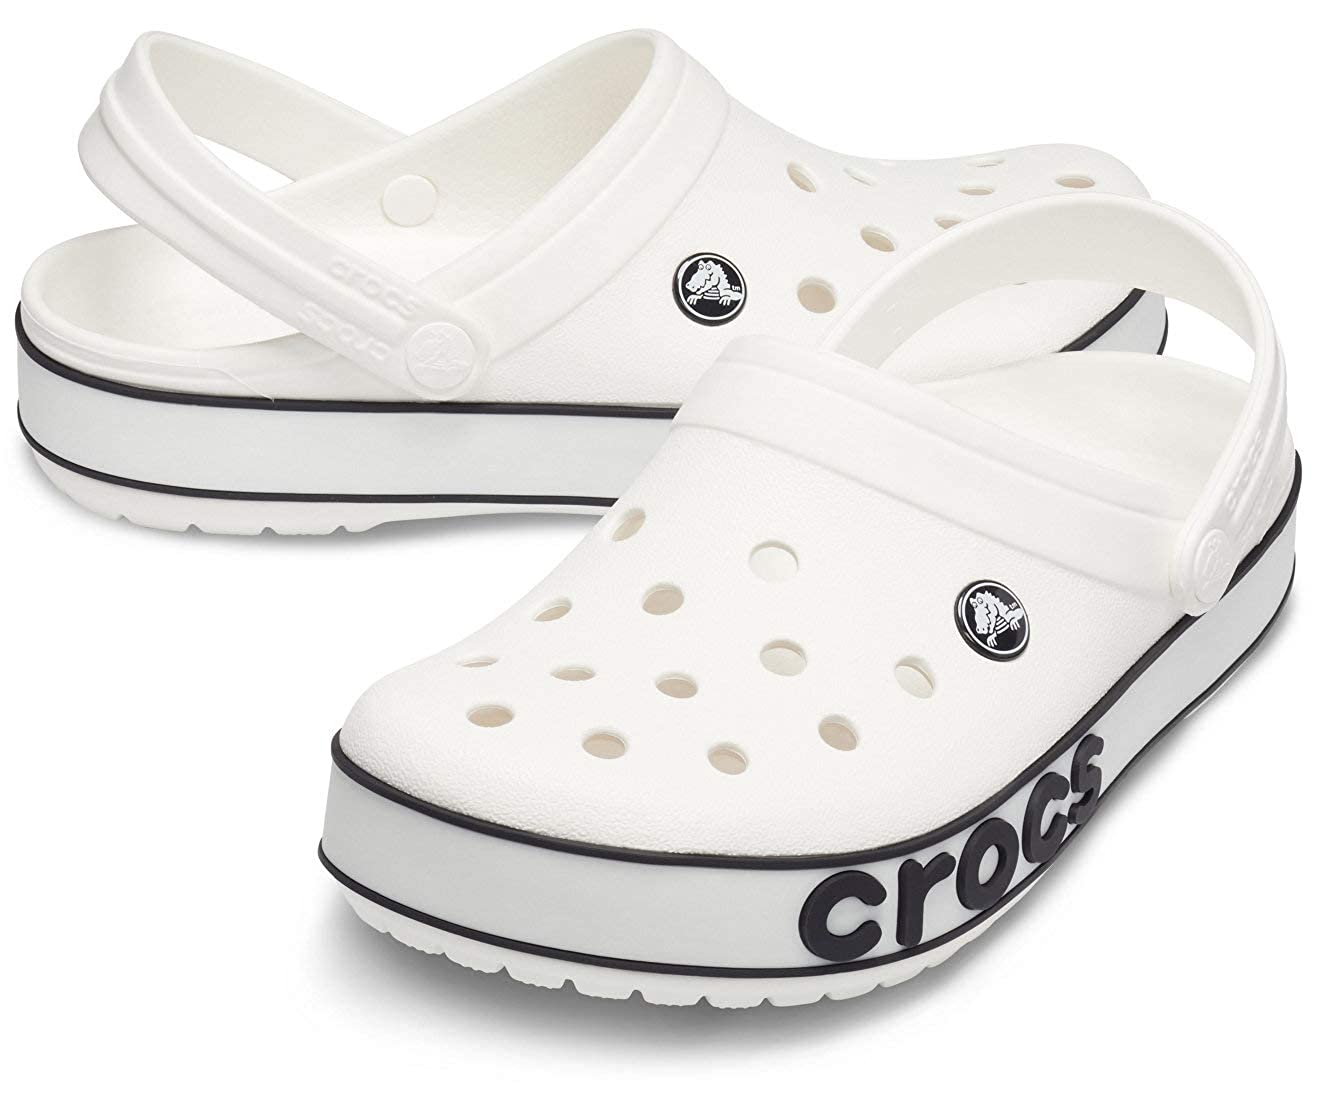 crocs Unisex's Clogs-206021-103